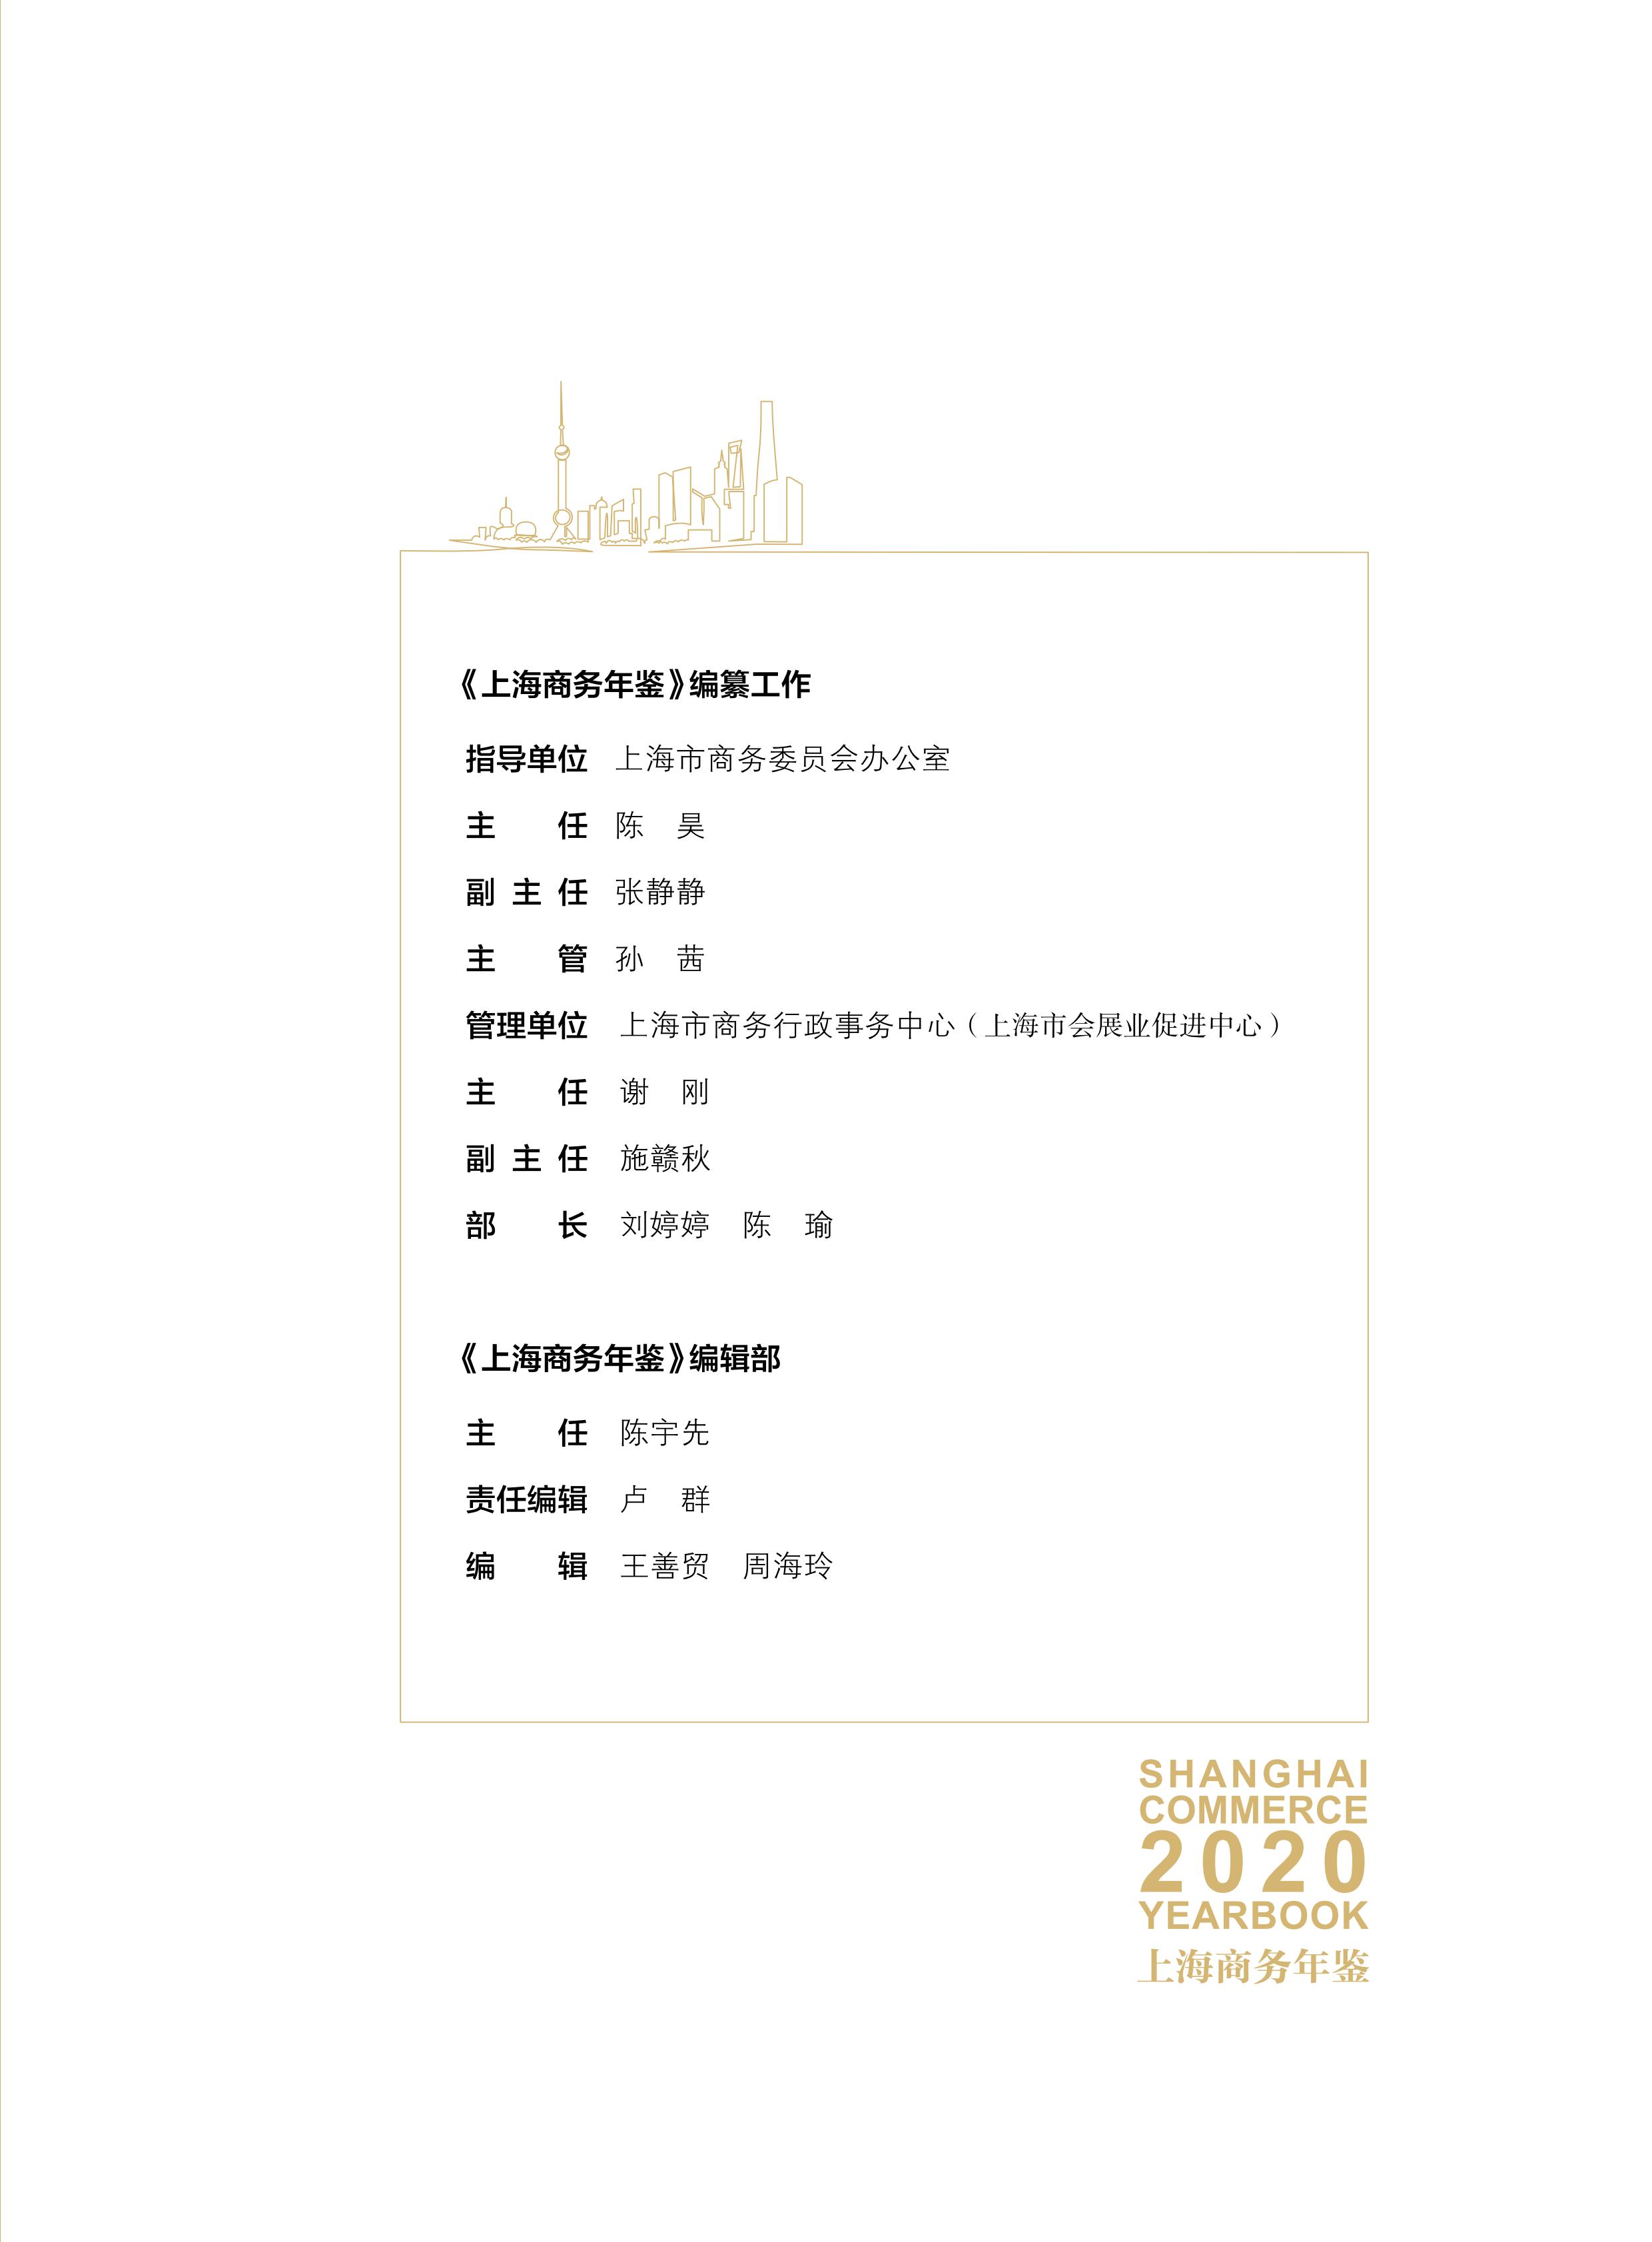 上海商务年鉴2020公开内容_02.jpg